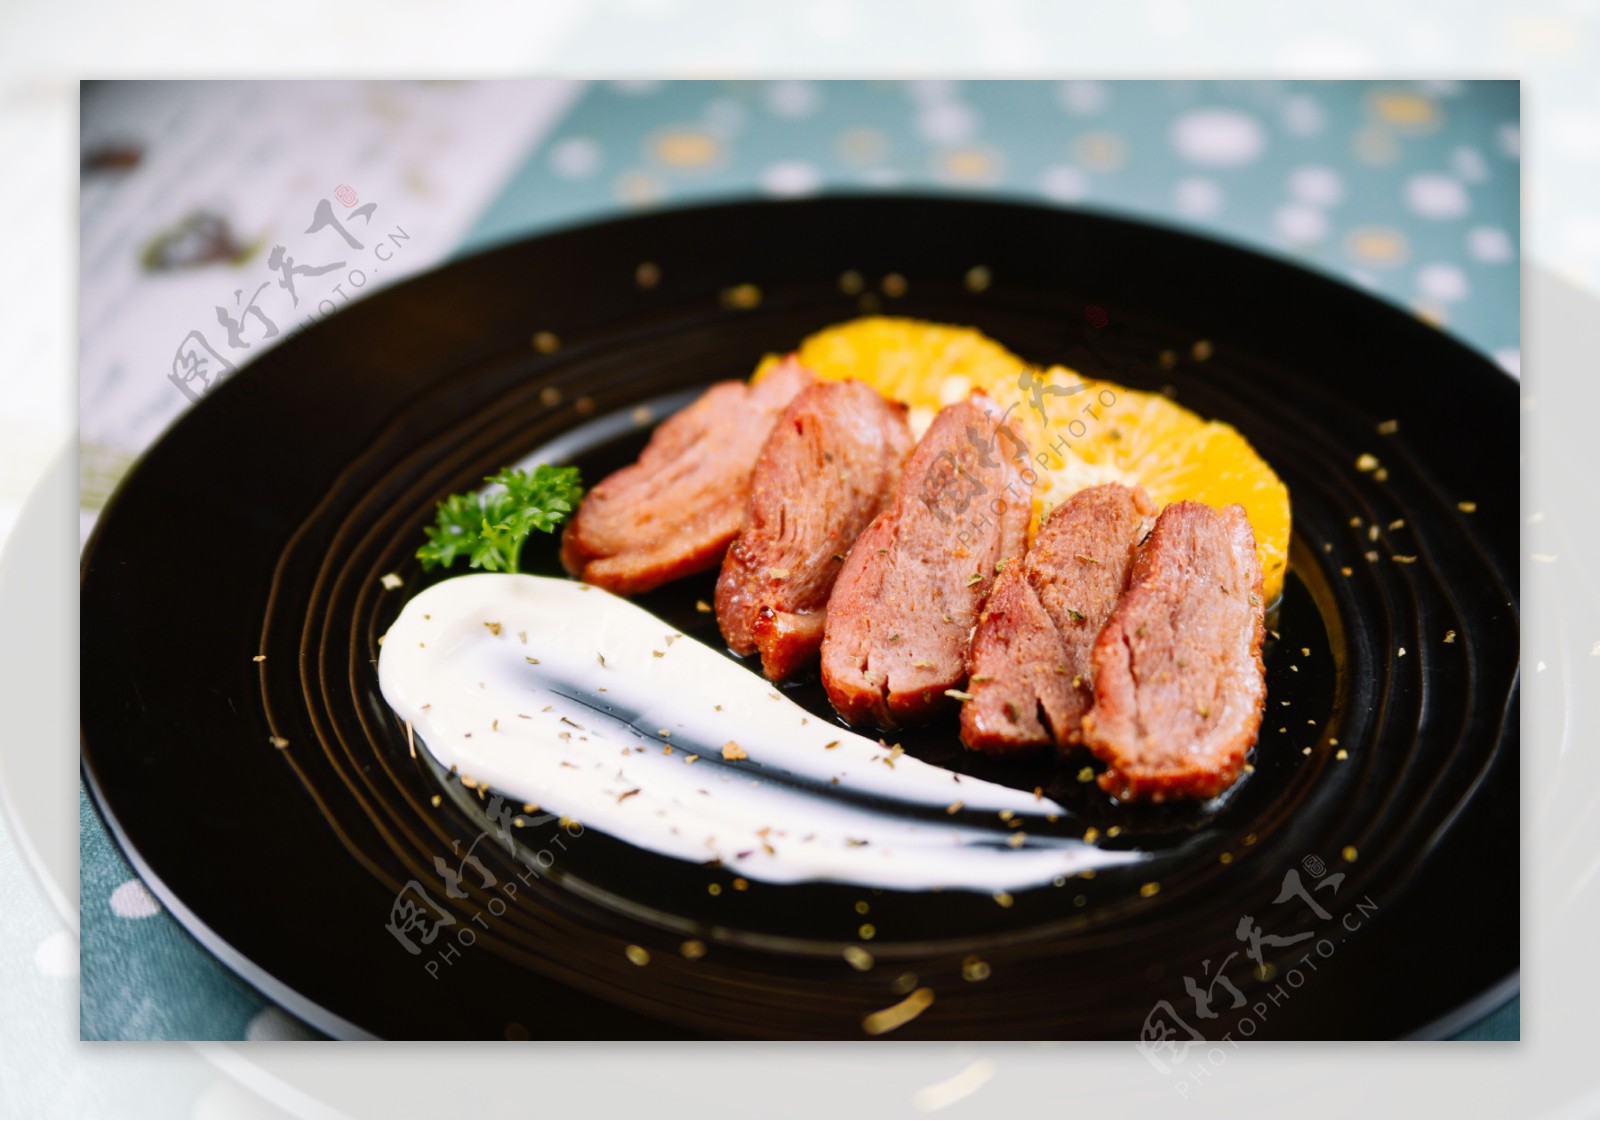 法式烤排 铁板肉排 鸭胸肉调理品 自助餐食材 便当套餐 半成品-阿里巴巴